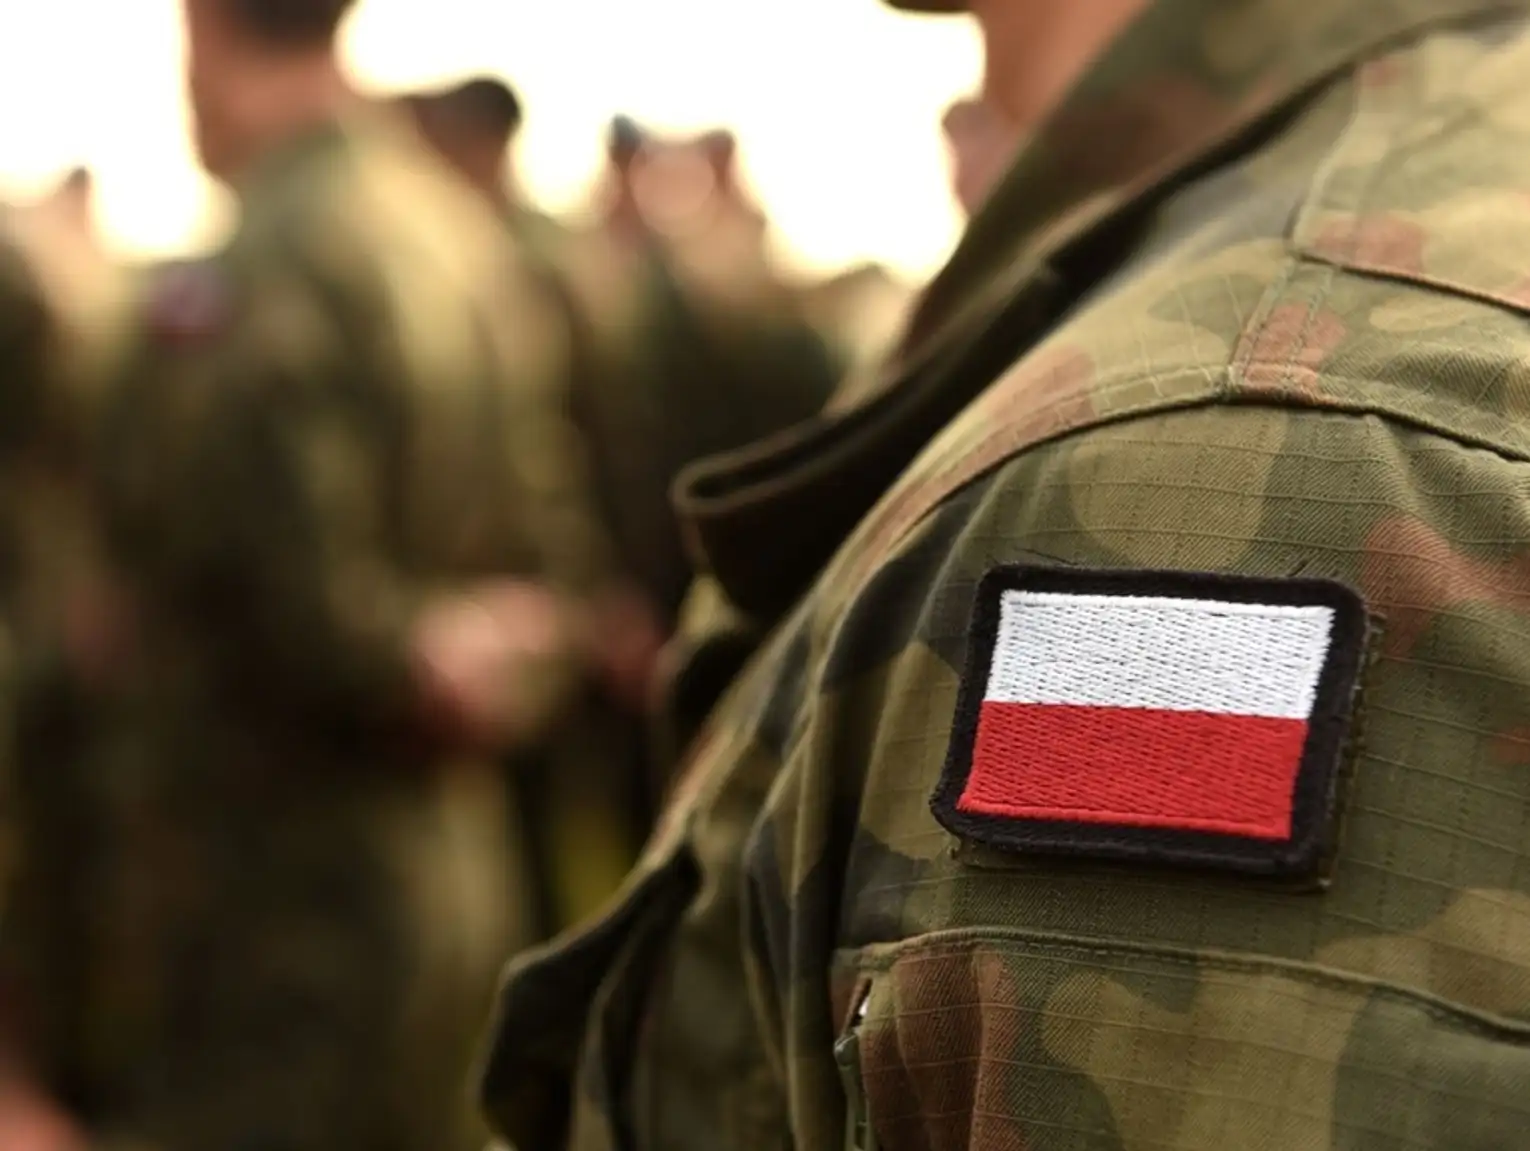 Polskie wojsko nie chce transseksualistów. RPO twierdzi, że to dyskryminacja